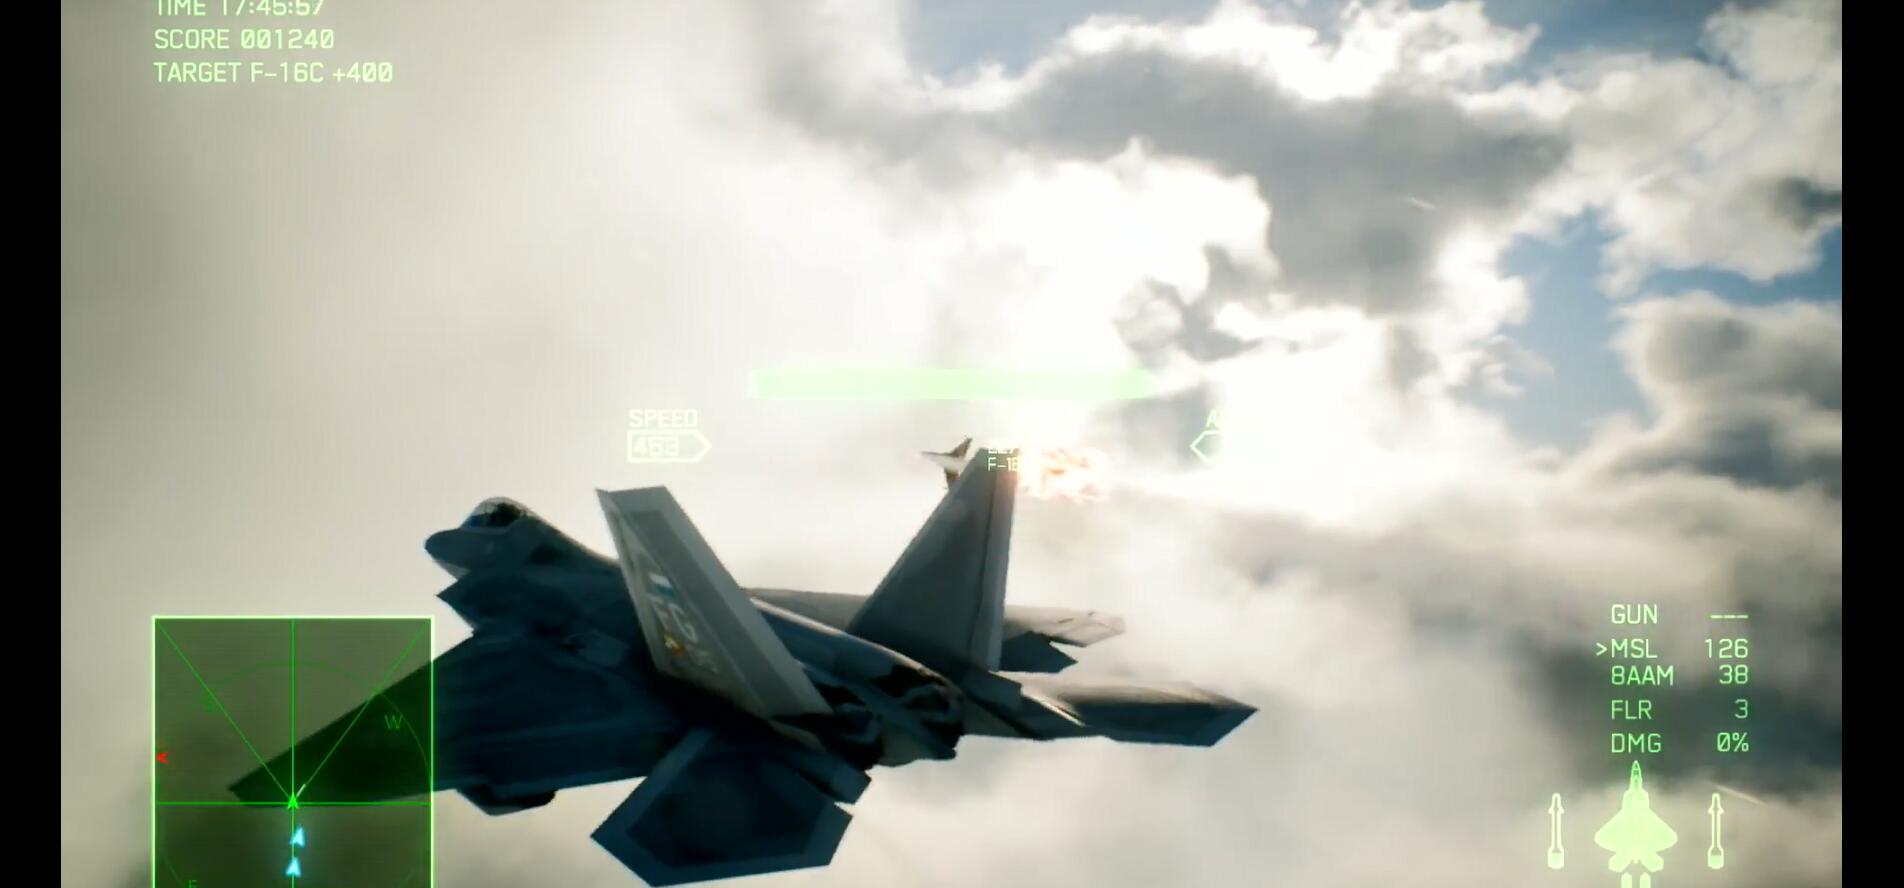 猛禽掠空！《皇牌空战7》战机介绍视频第八部F-22A